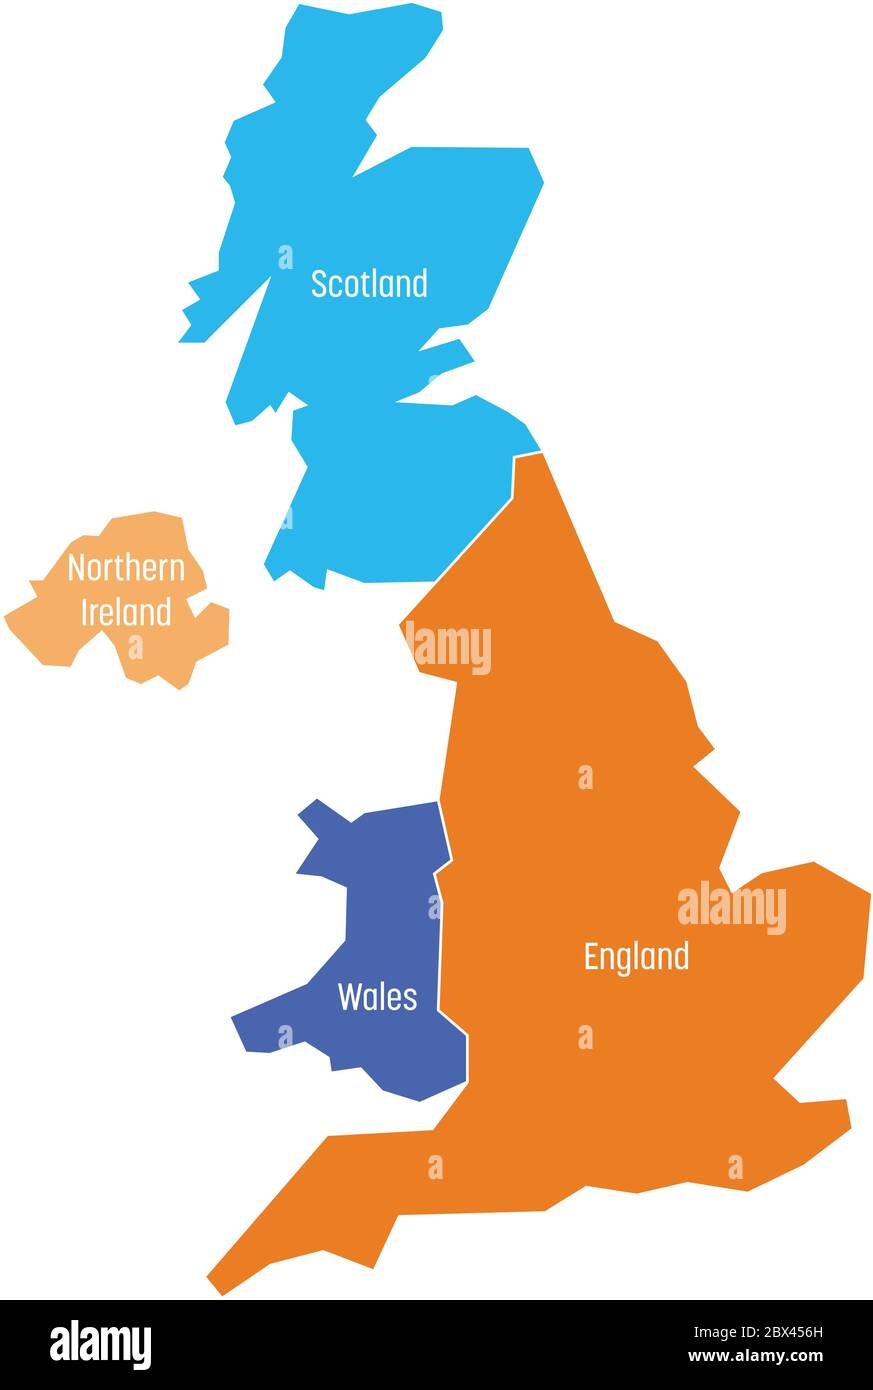 Großbritannien, Großbritannien, Großbritannien und Nordirland Karte. Aufgeteilt in vier Länder - England, Wales, Schottland und NI. Einfache flache Vektorgrafik. Stock Vektor